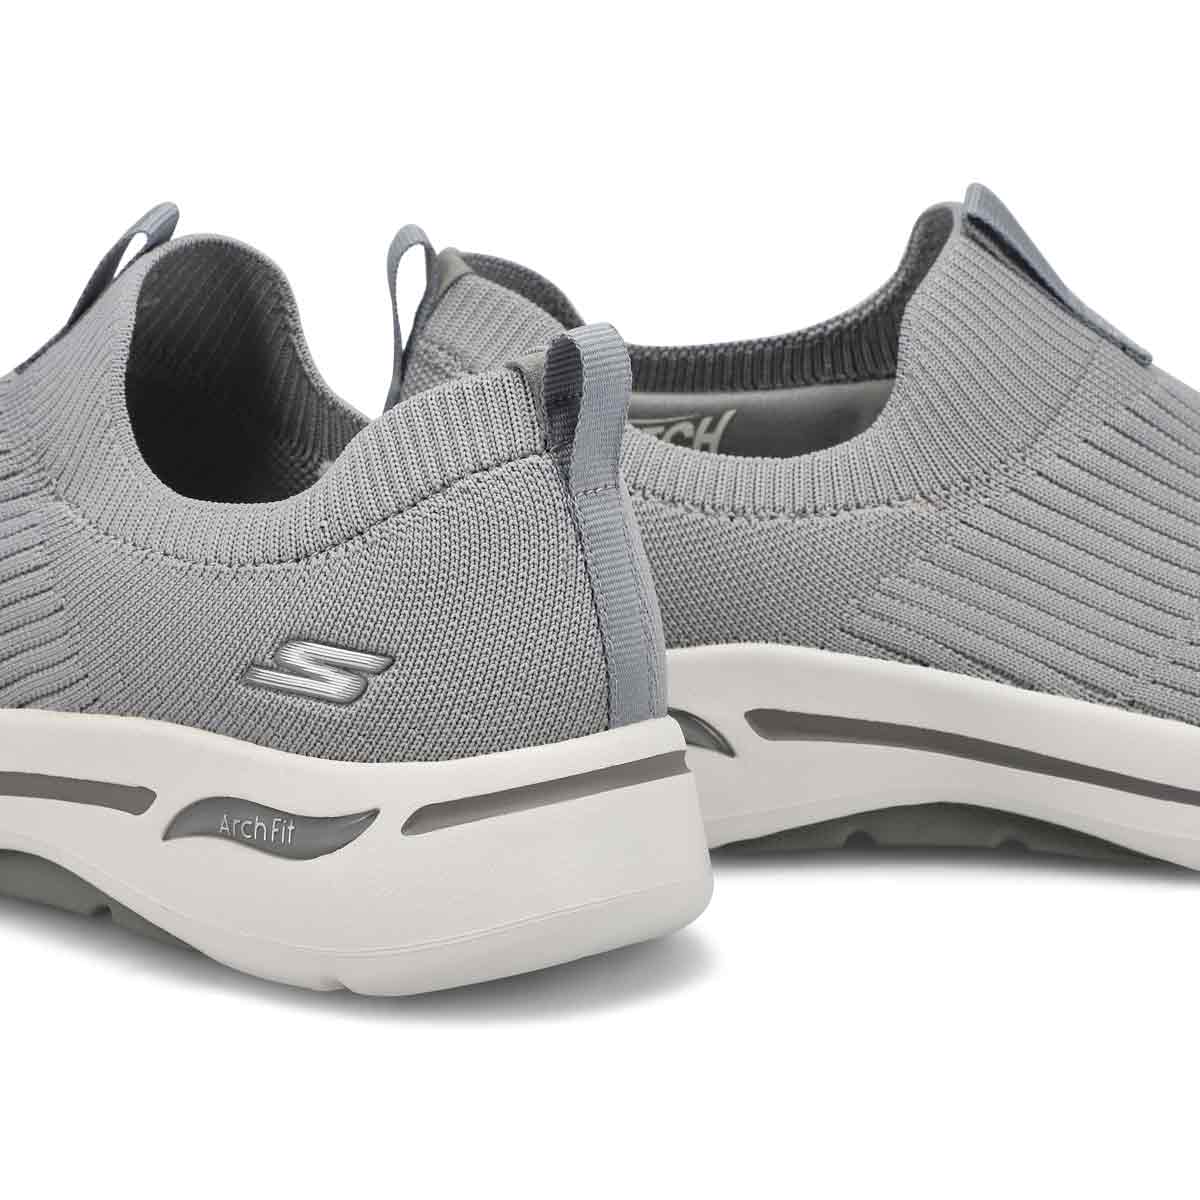 Women's Go Walk Arch Fit Iconic Sneaker - Grey